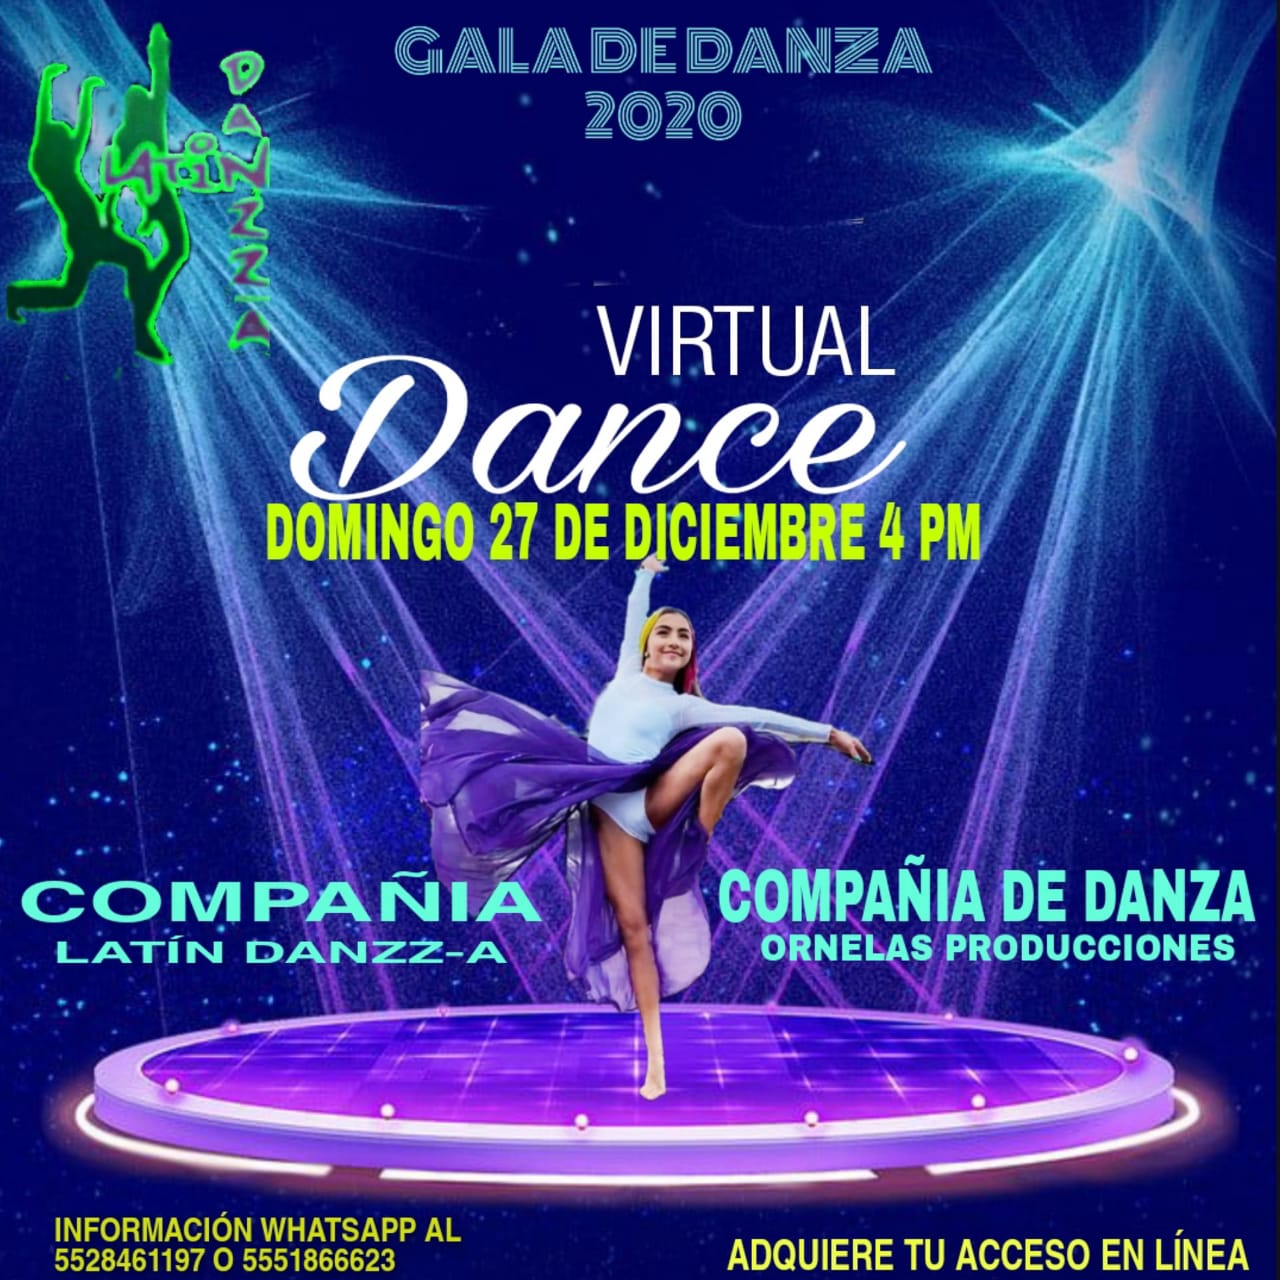 GALA DE DANZA 2020  VIRTUAL DANCE. Compañia Latin Danzz-a